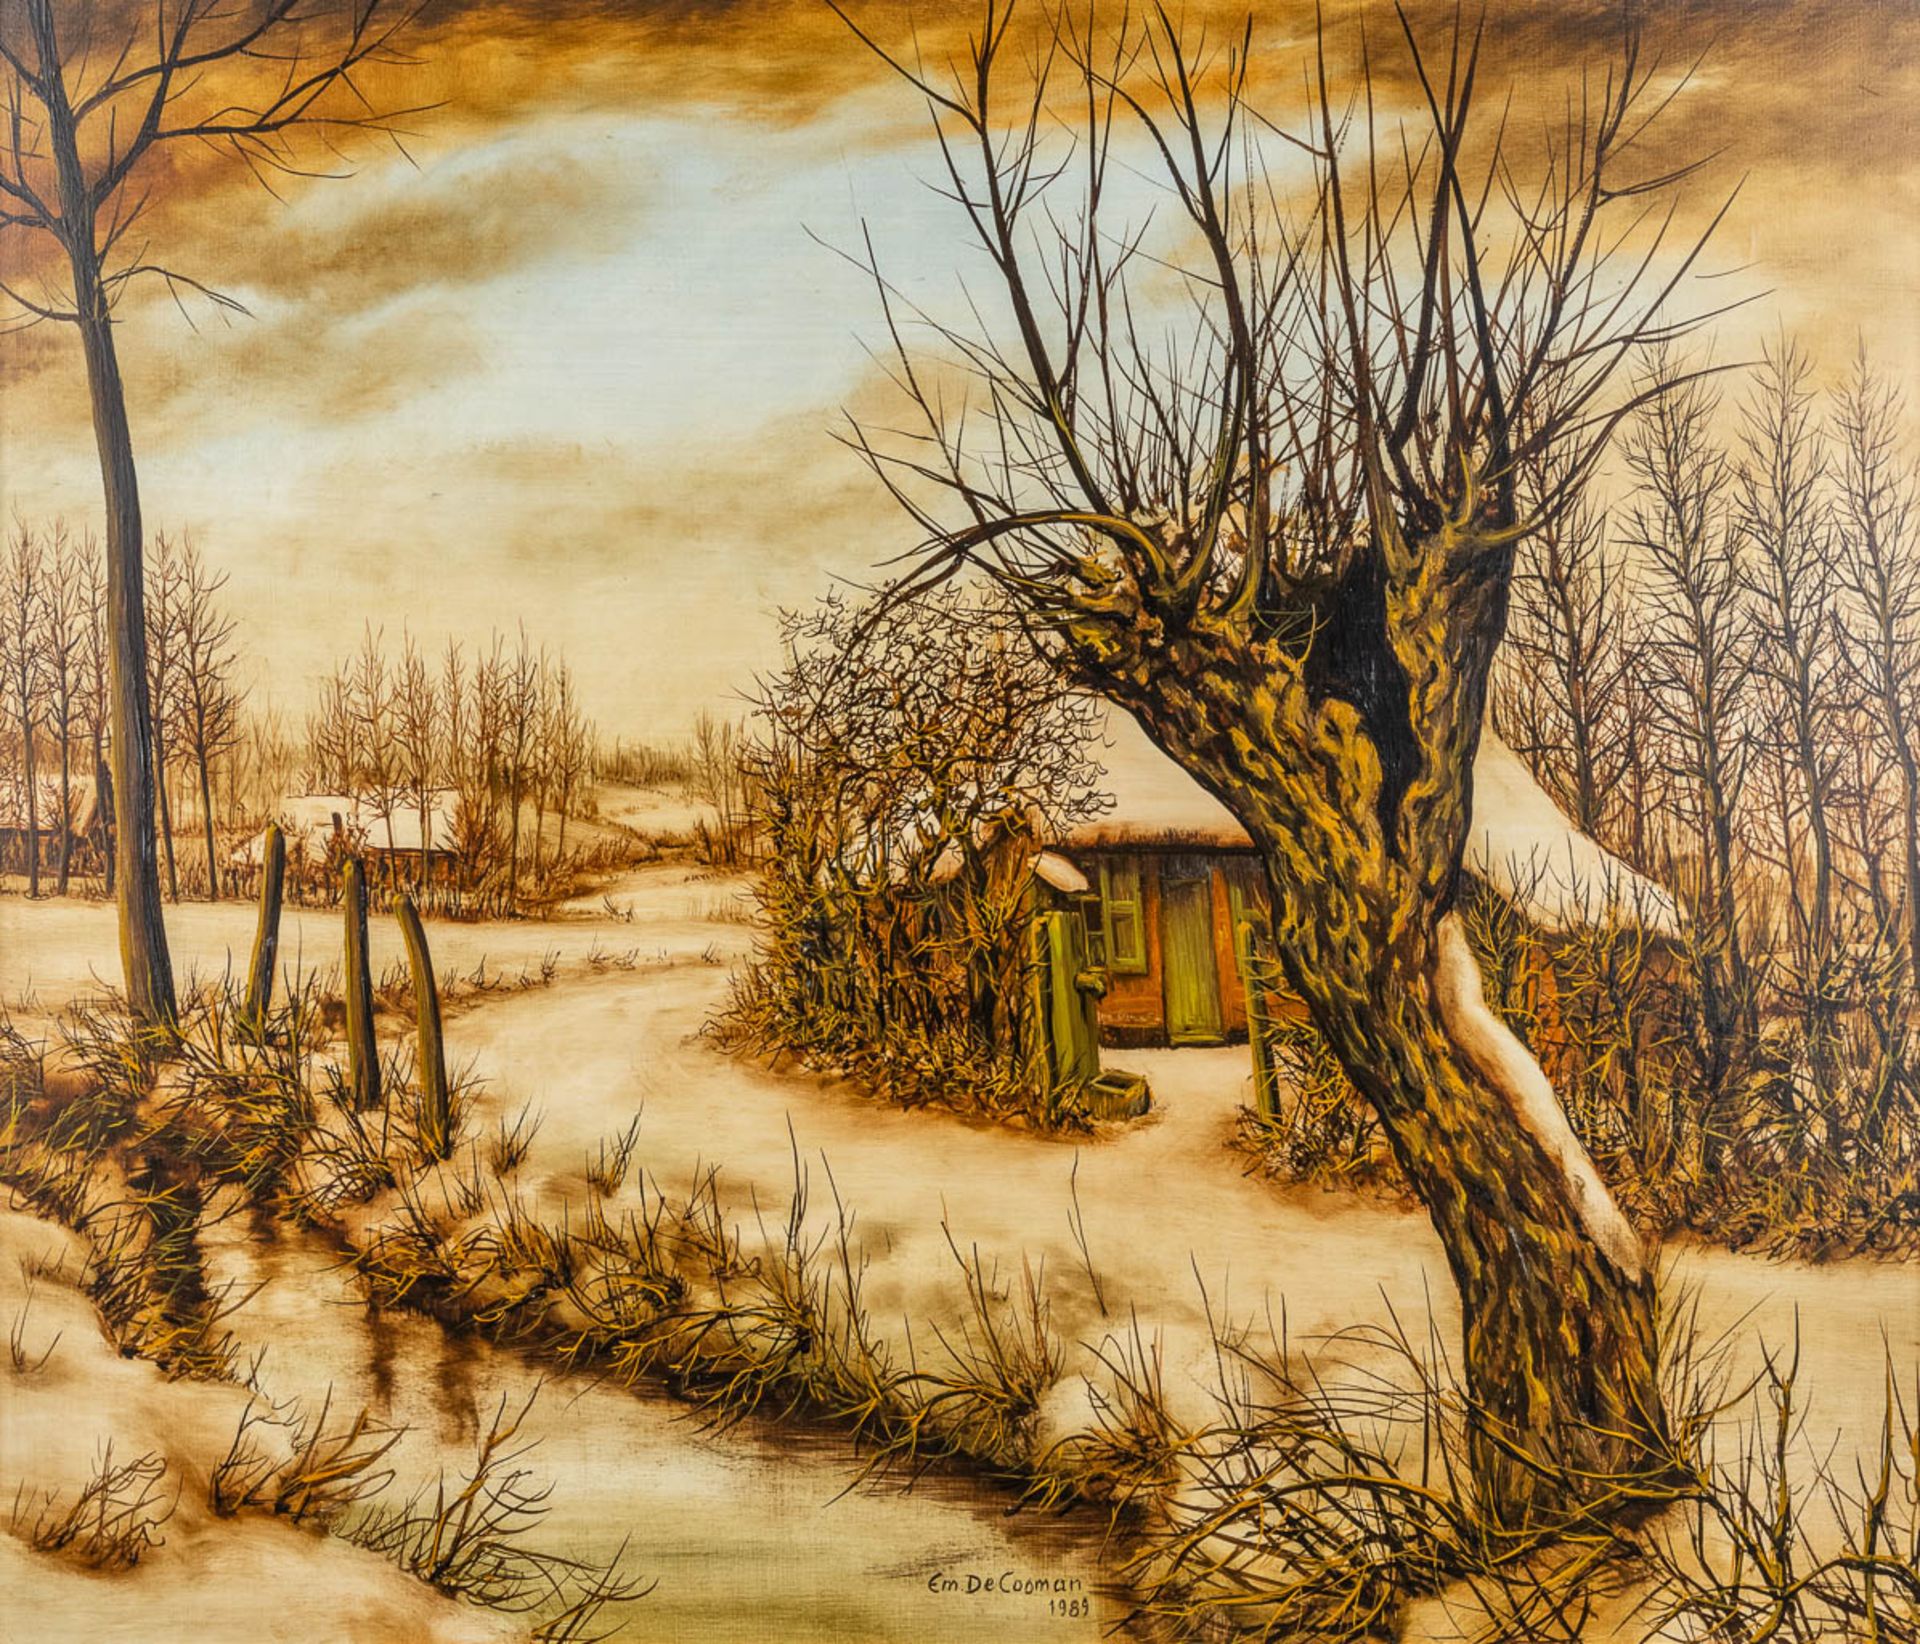 Emiel DE COOMAN (1922) 'Two Landscapes' oil on canvas. (W:70 x H:60 cm) - Image 4 of 15